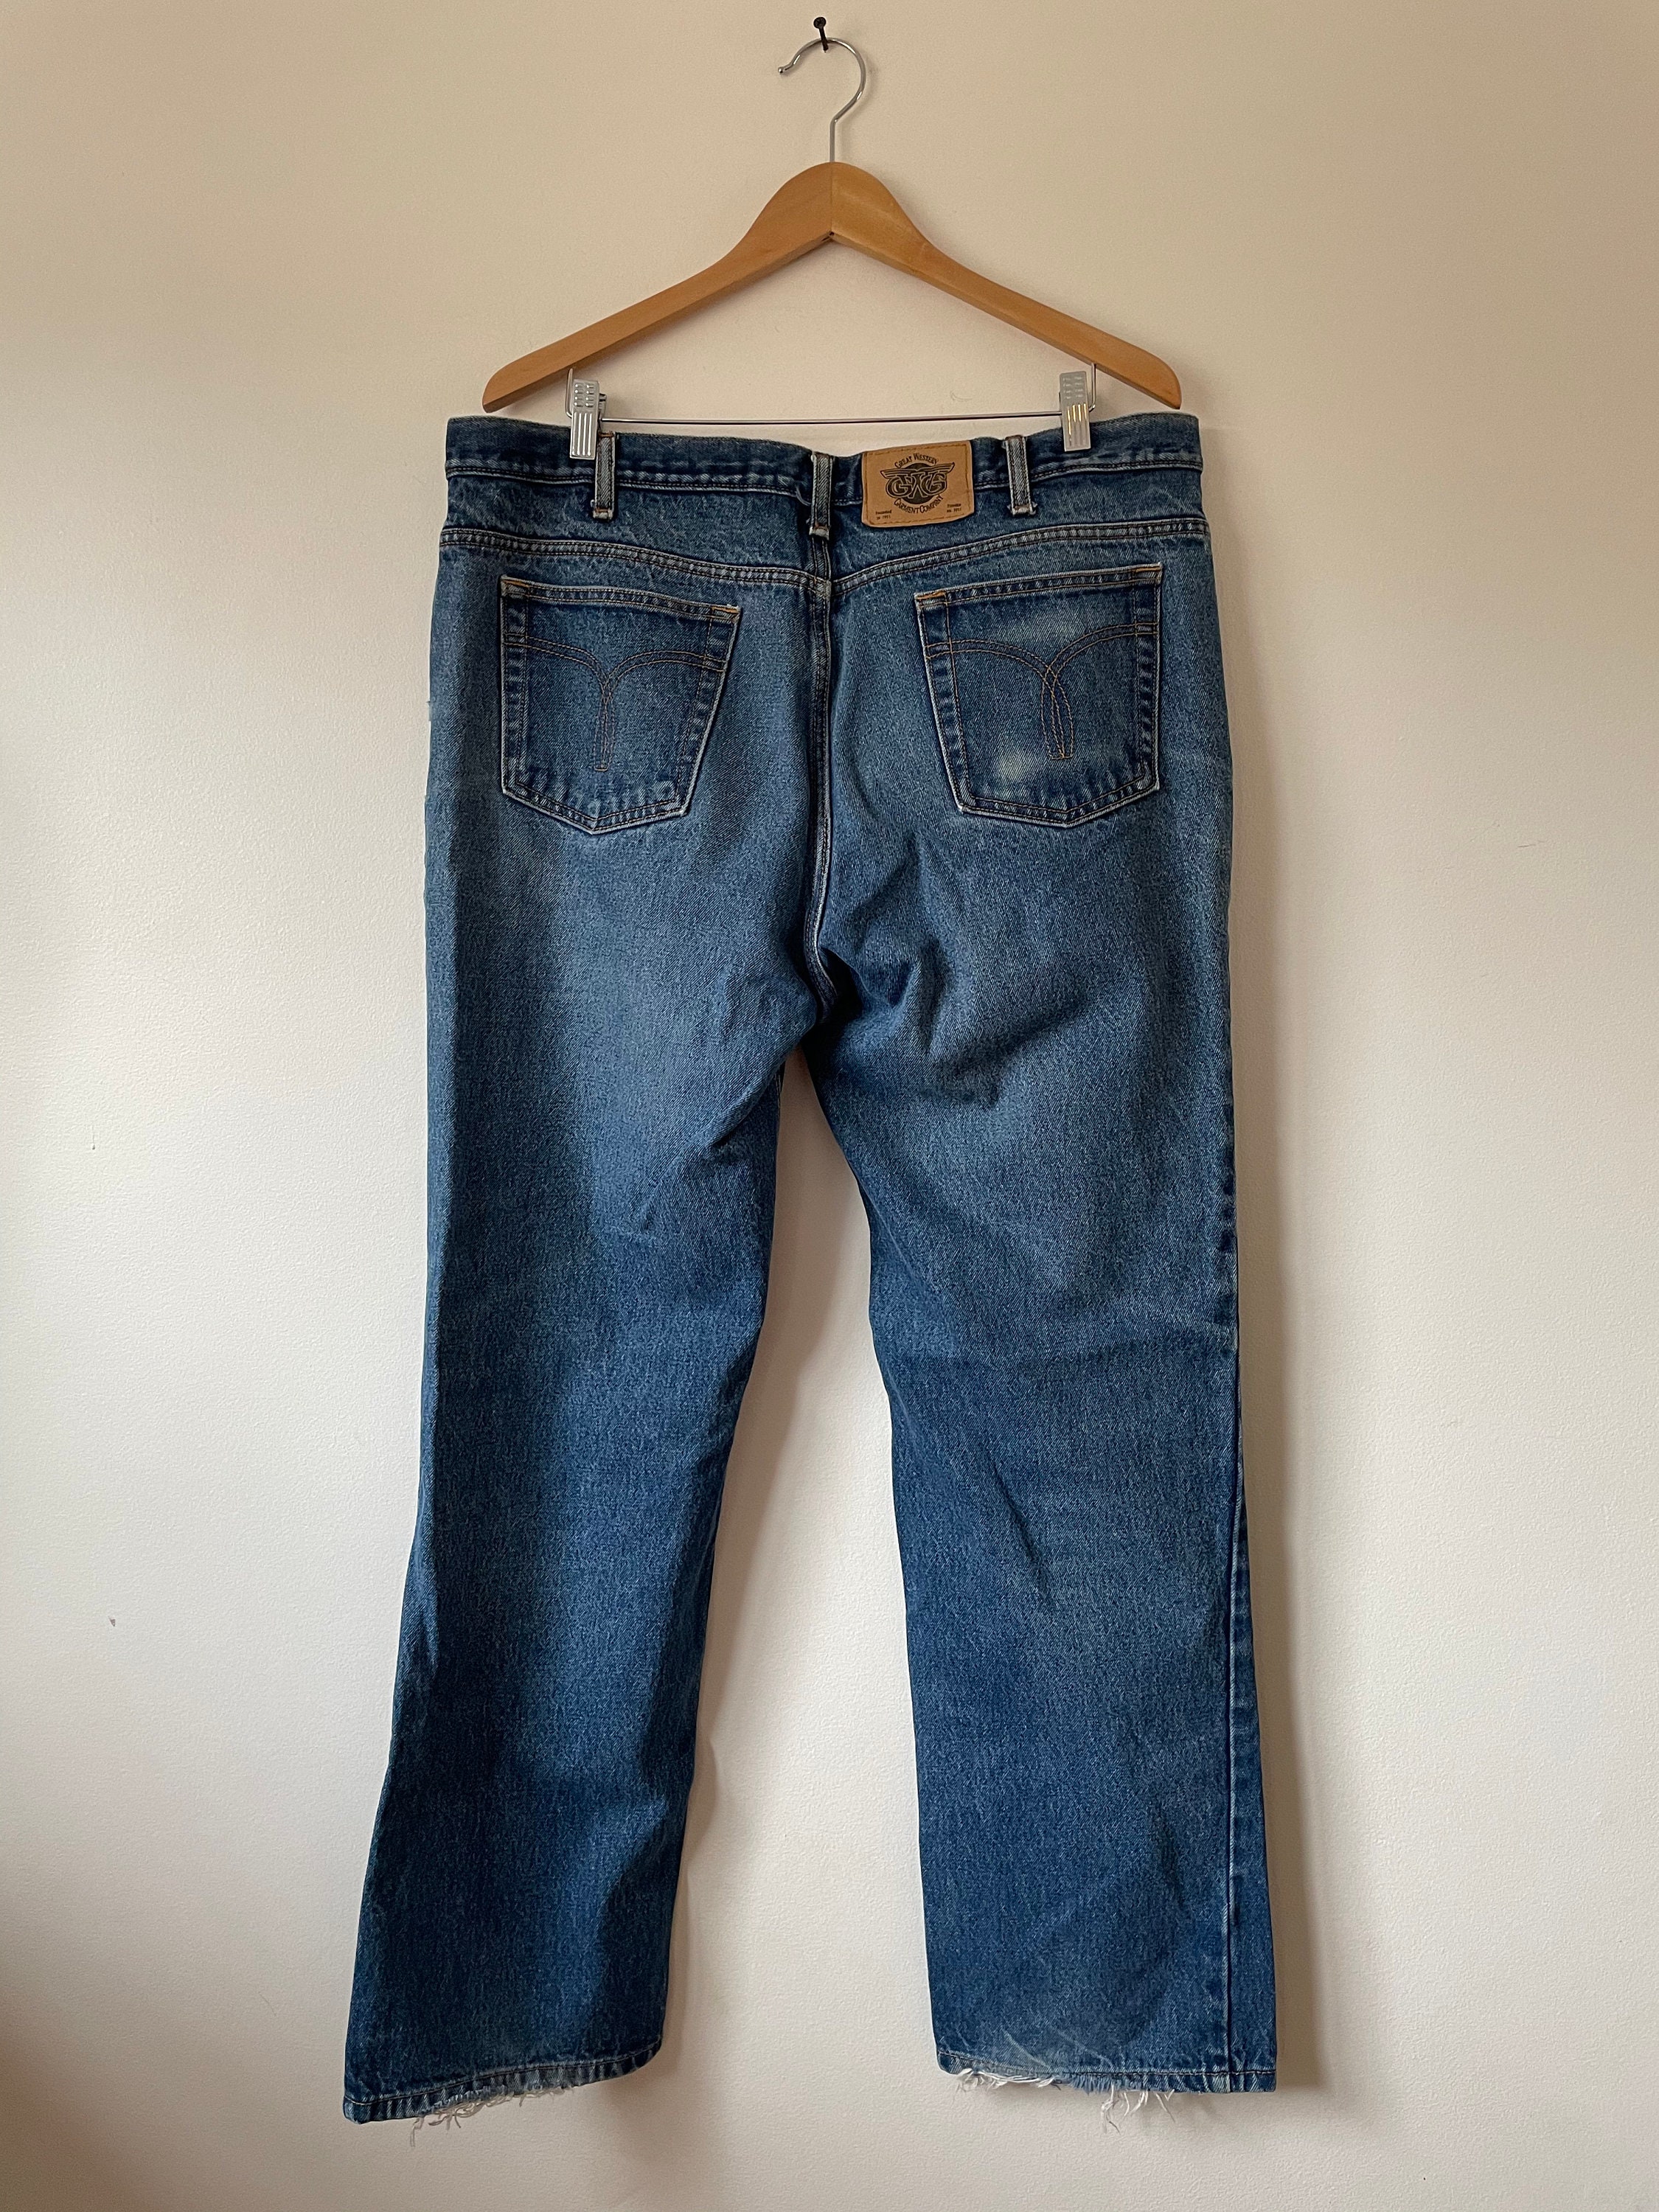 Vintage 1990s GWG Jeans | Etsy